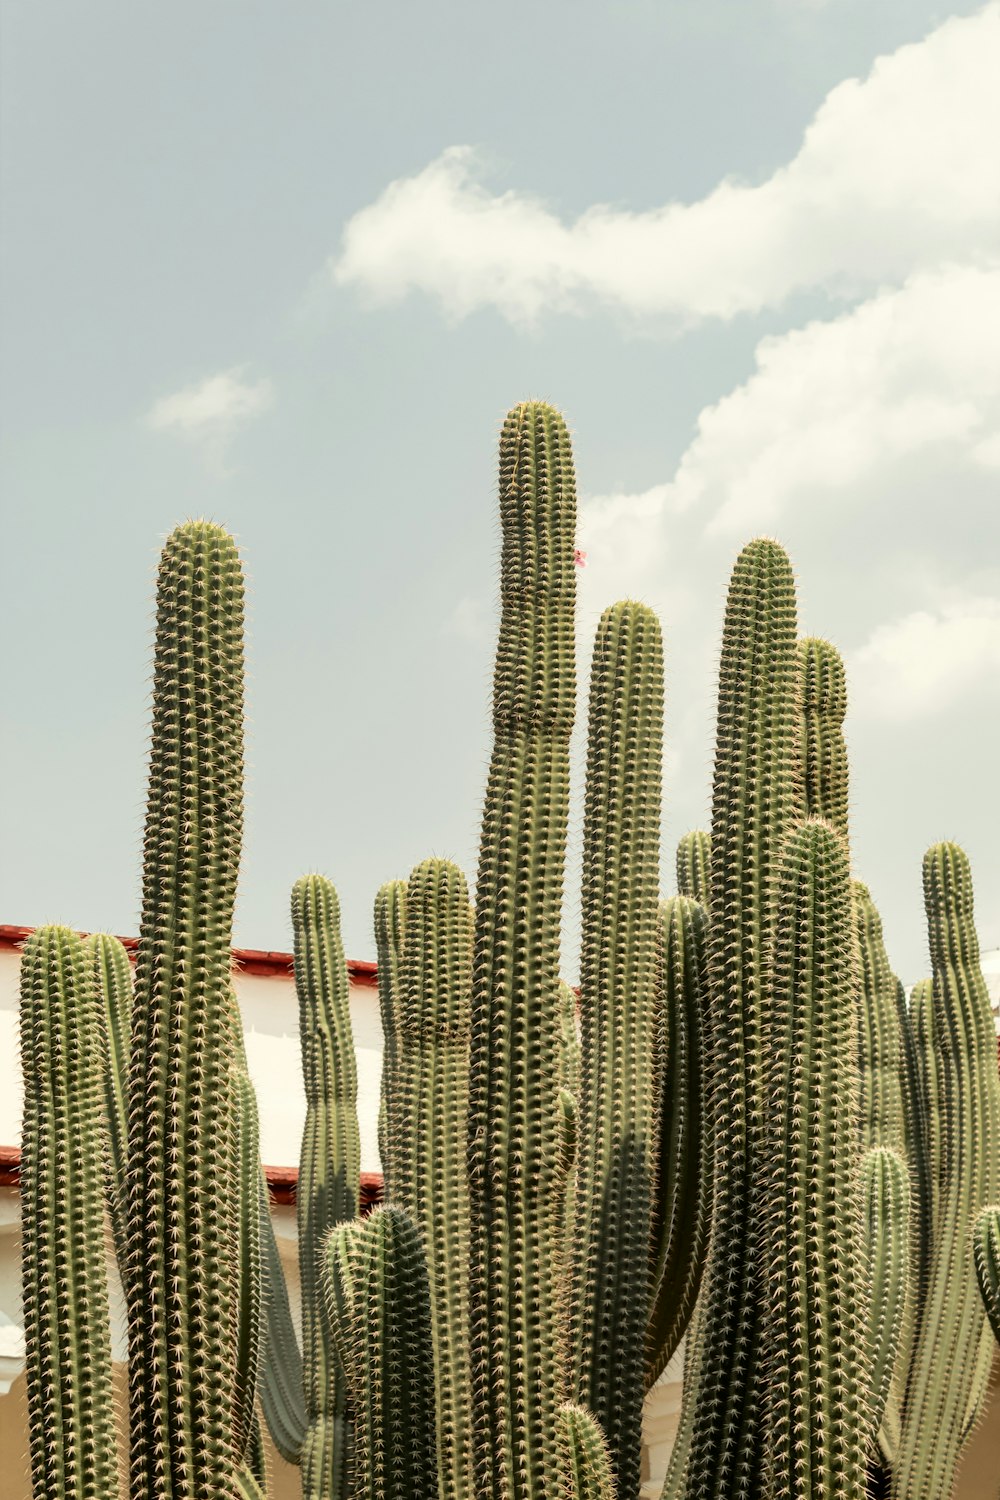 green cacti during daytime